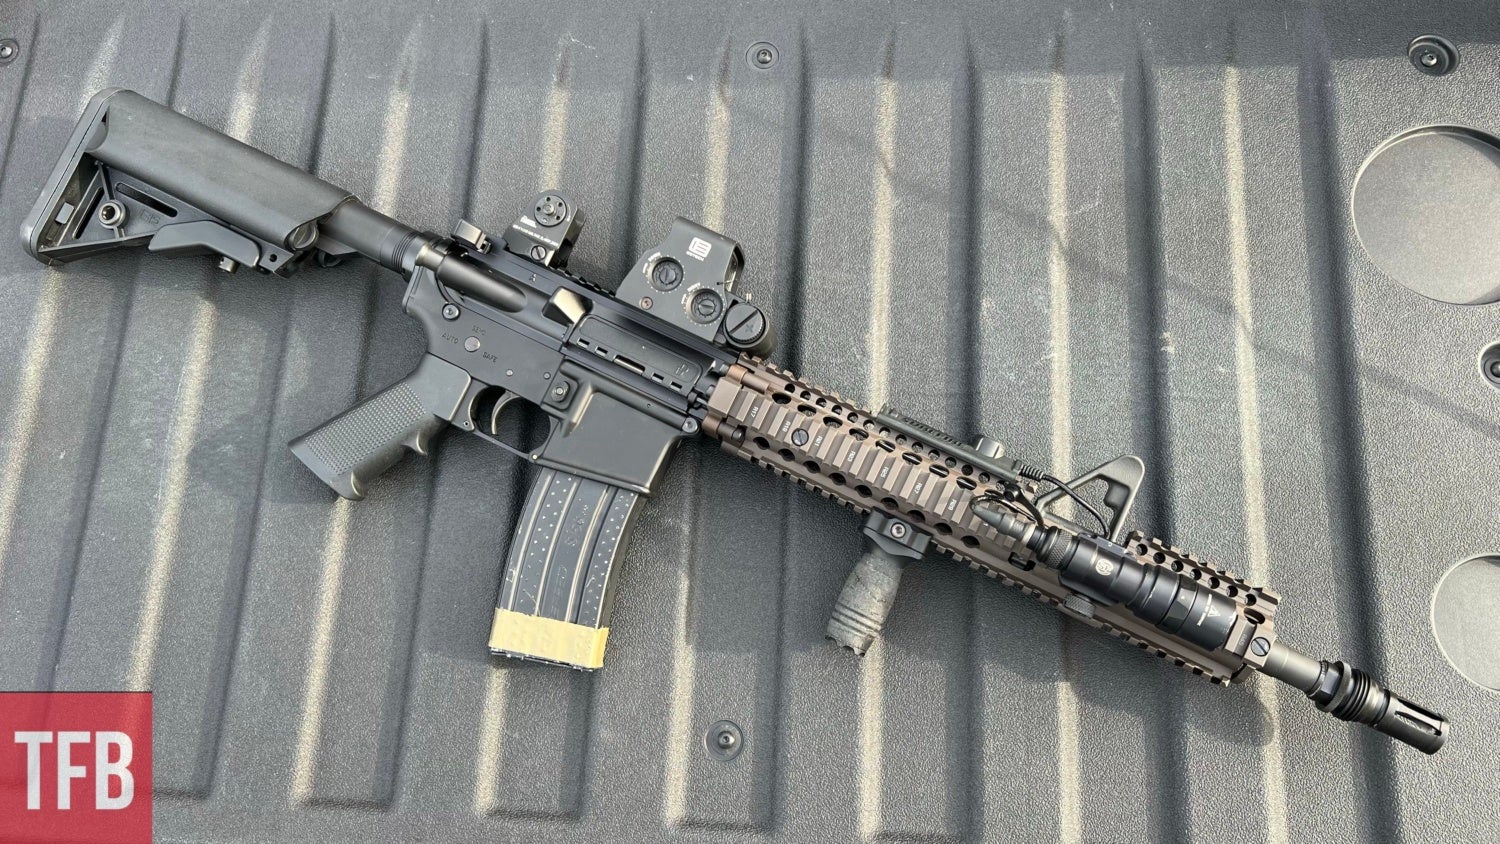 TFB Review: The Daniel Defense M4A1 FSB Upper